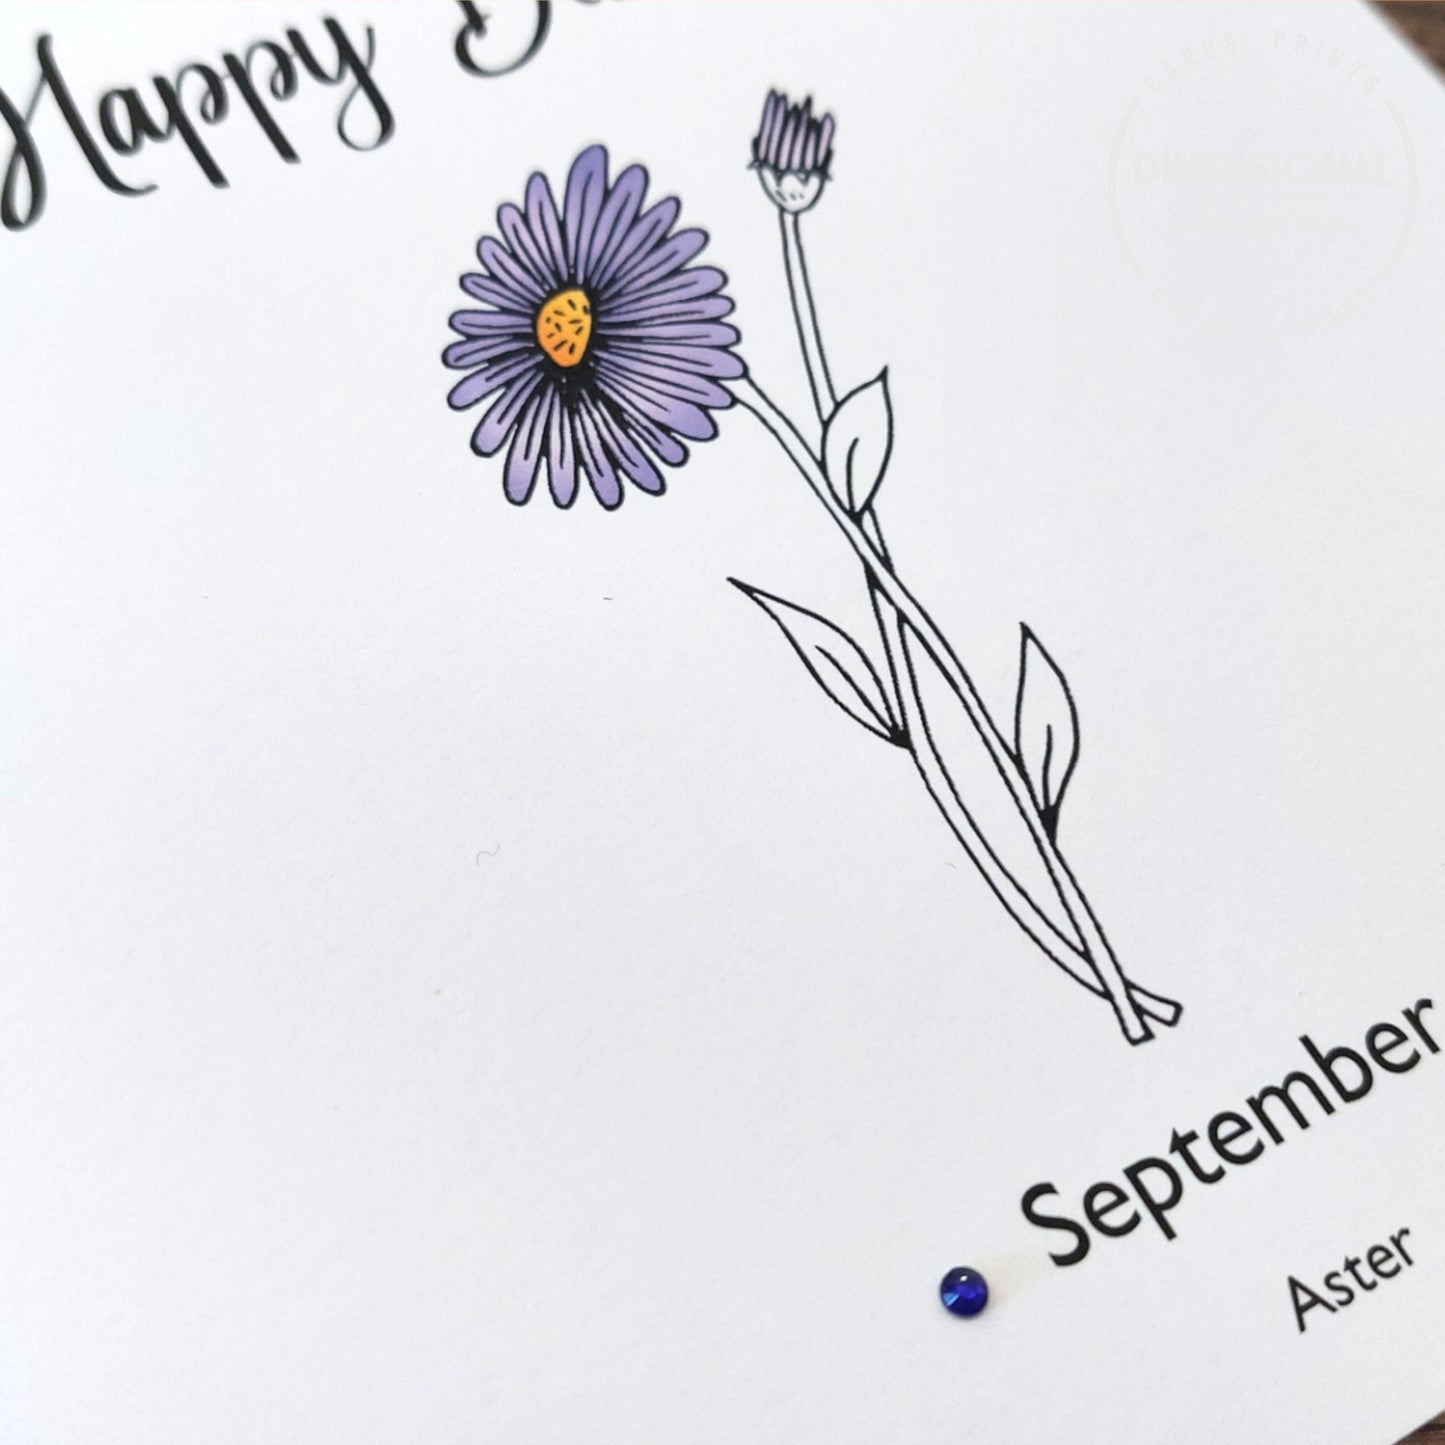 September - Aster - Birthday Flower Card